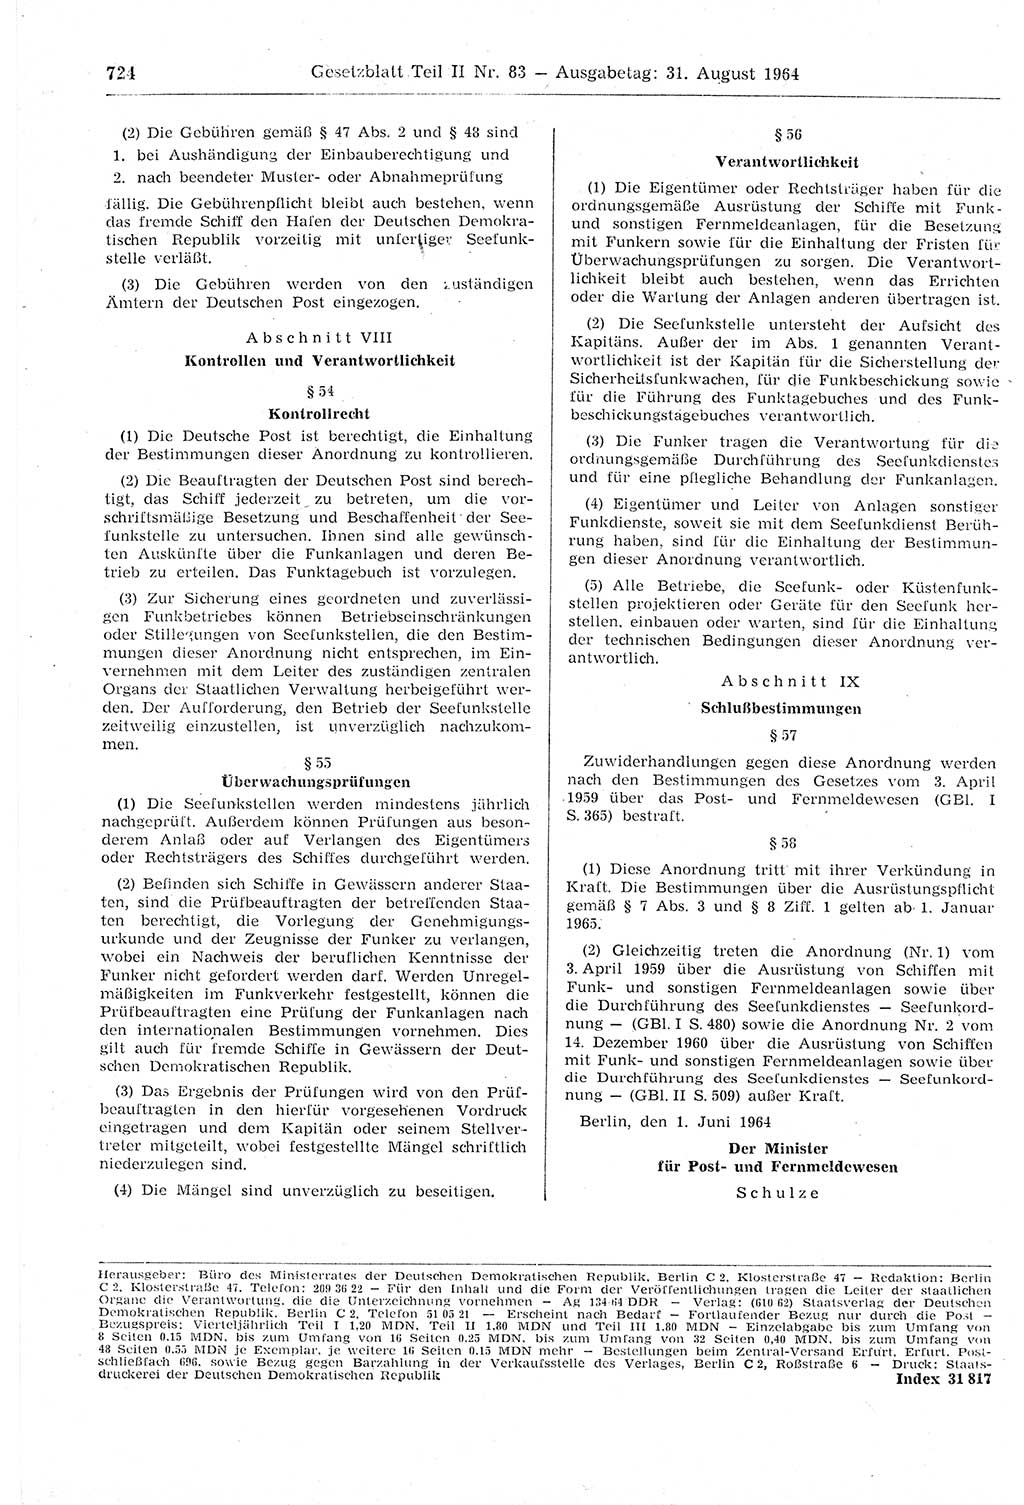 Gesetzblatt (GBl.) der Deutschen Demokratischen Republik (DDR) Teil ⅠⅠ 1964, Seite 724 (GBl. DDR ⅠⅠ 1964, S. 724)